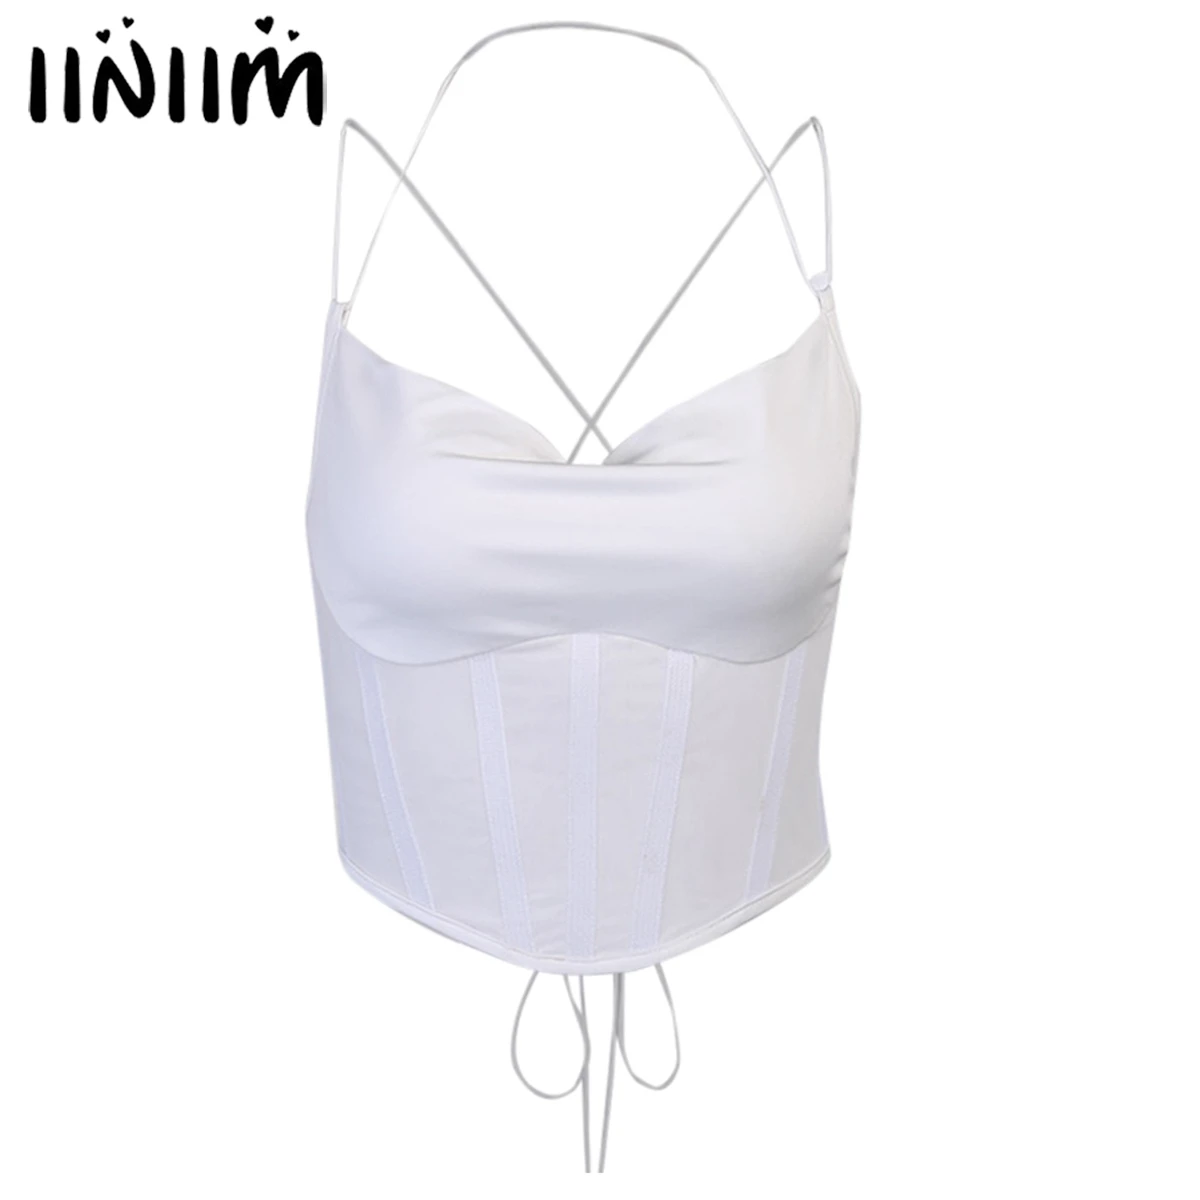 

iiniim Summer Camisoles Women's Crop Tops Sexy Lingerie Sleeveless Exotic Tanks Top Halter Neck Criss Cross Lace-up Back Vest